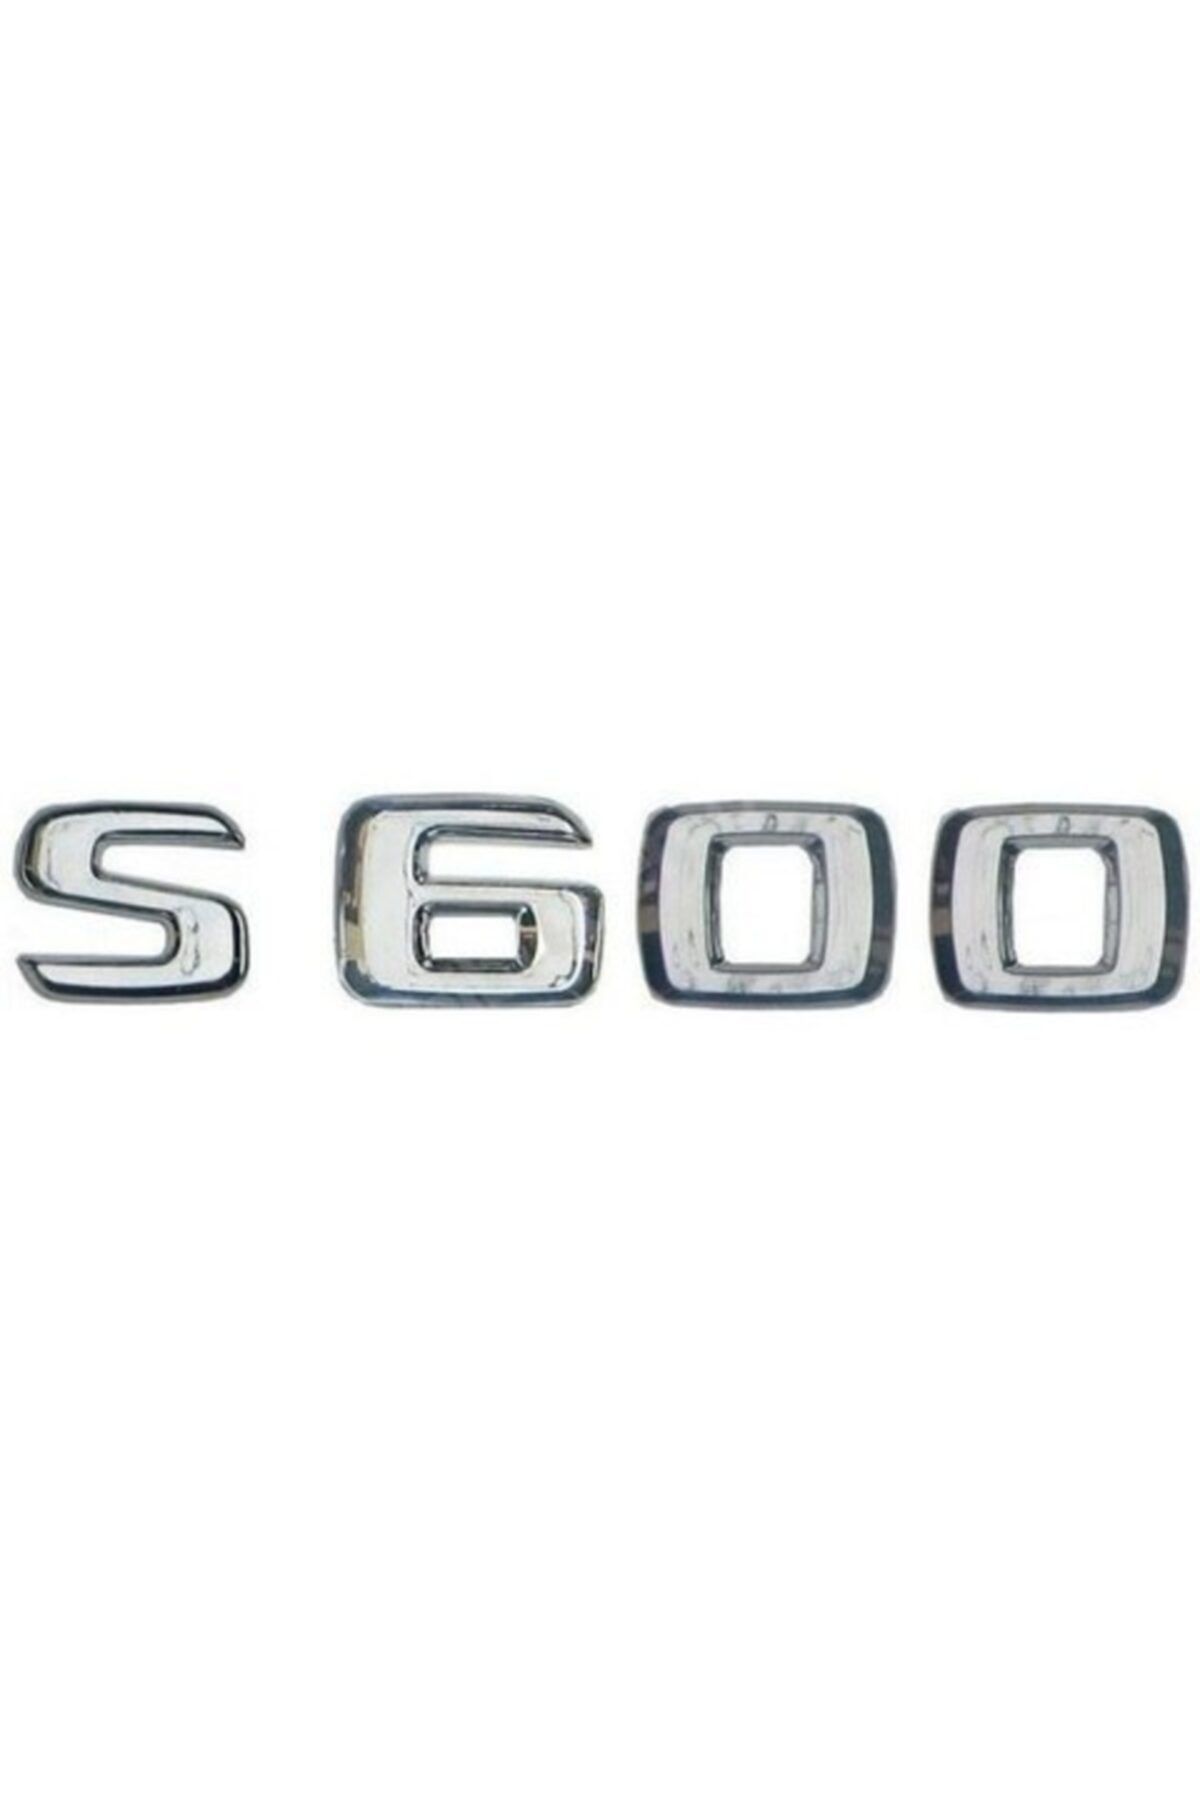 Mercedes S600 Yazı Şildi 1408173515